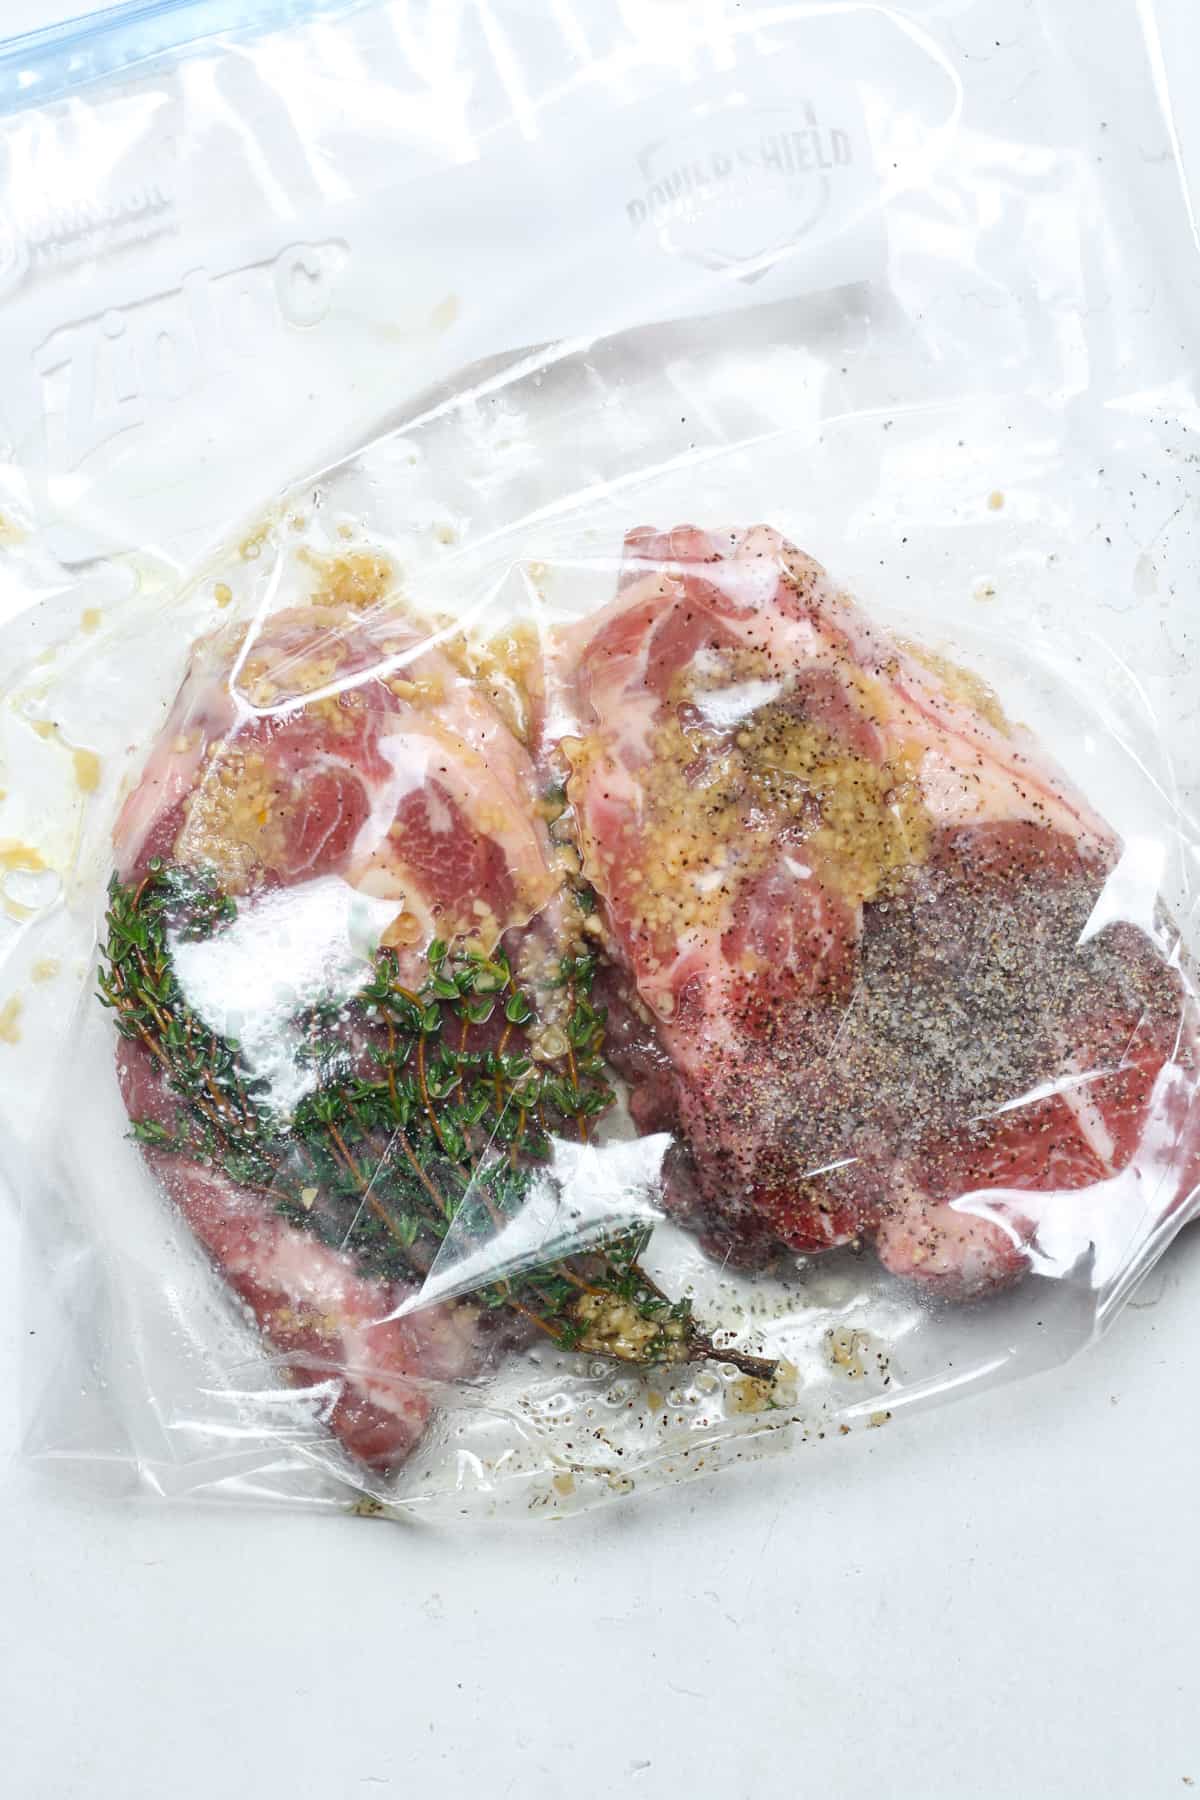 Lamb inside a Ziplock bag